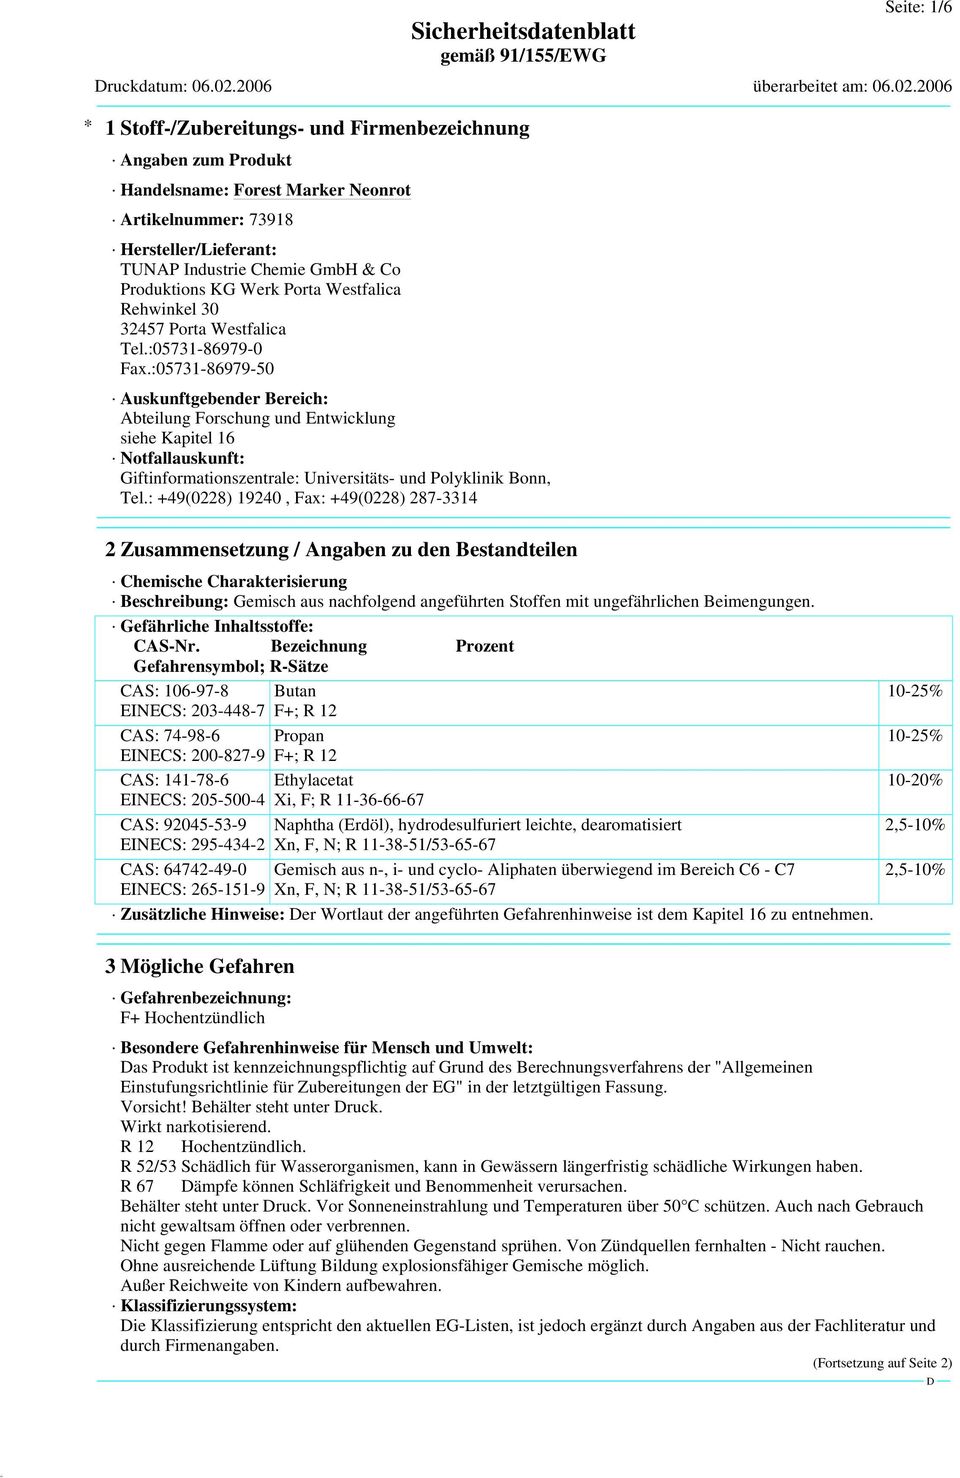 :05731-86979-50 Auskunftgebender Bereich: Abteilung Forschung und Entwicklung siehe Kapitel 16 Notfallauskunft: Giftinformationszentrale: Universitäts- und Polyklinik Bonn, Tel.